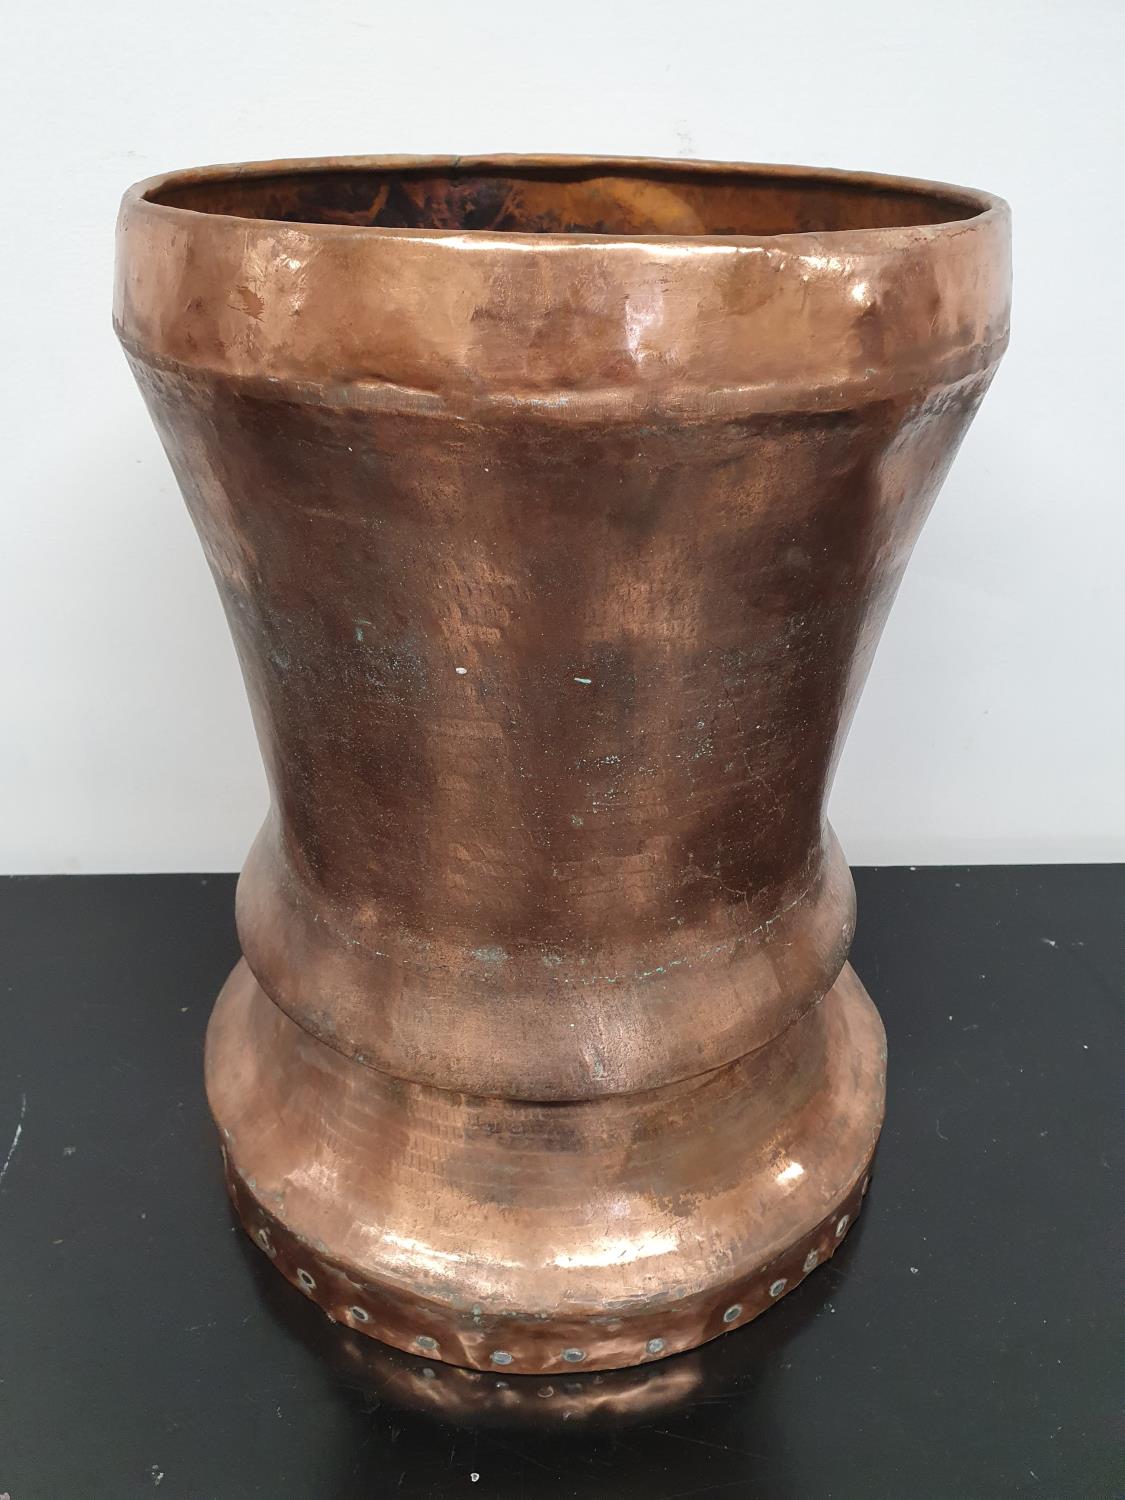 SILK ROAD: A large Copper Pot. Diam 30 x 44h cms.